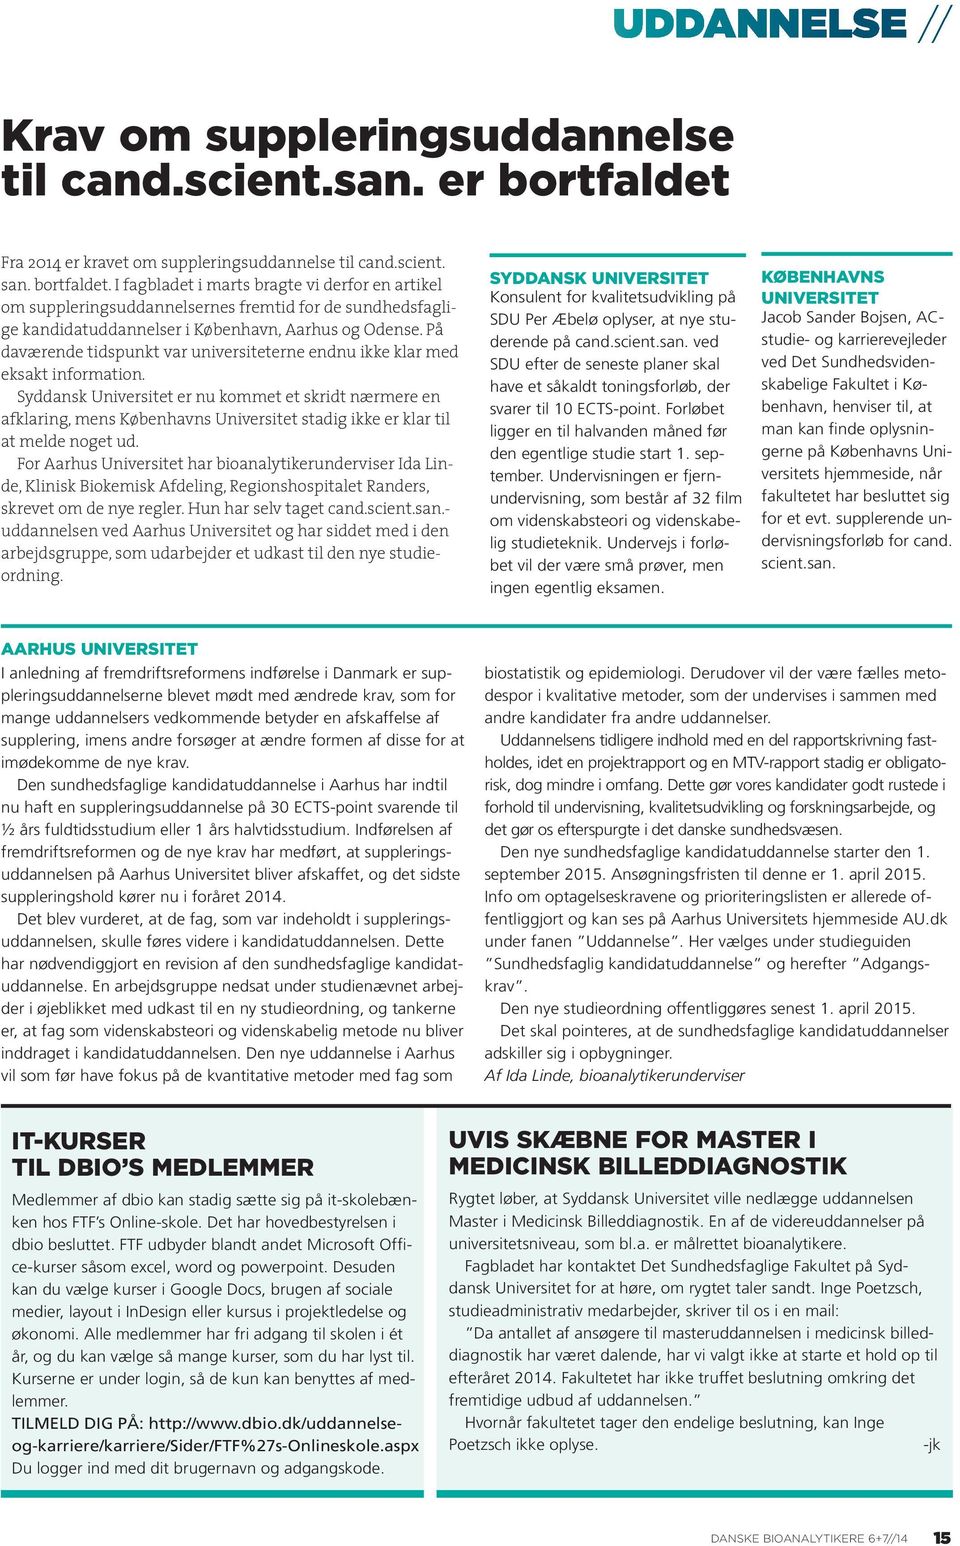 I fagbladet i marts bragte vi derfor en artikel om suppleringsuddannelsernes fremtid for de sundhedsfaglige kandidatuddannelser i København, Aarhus og Odense.